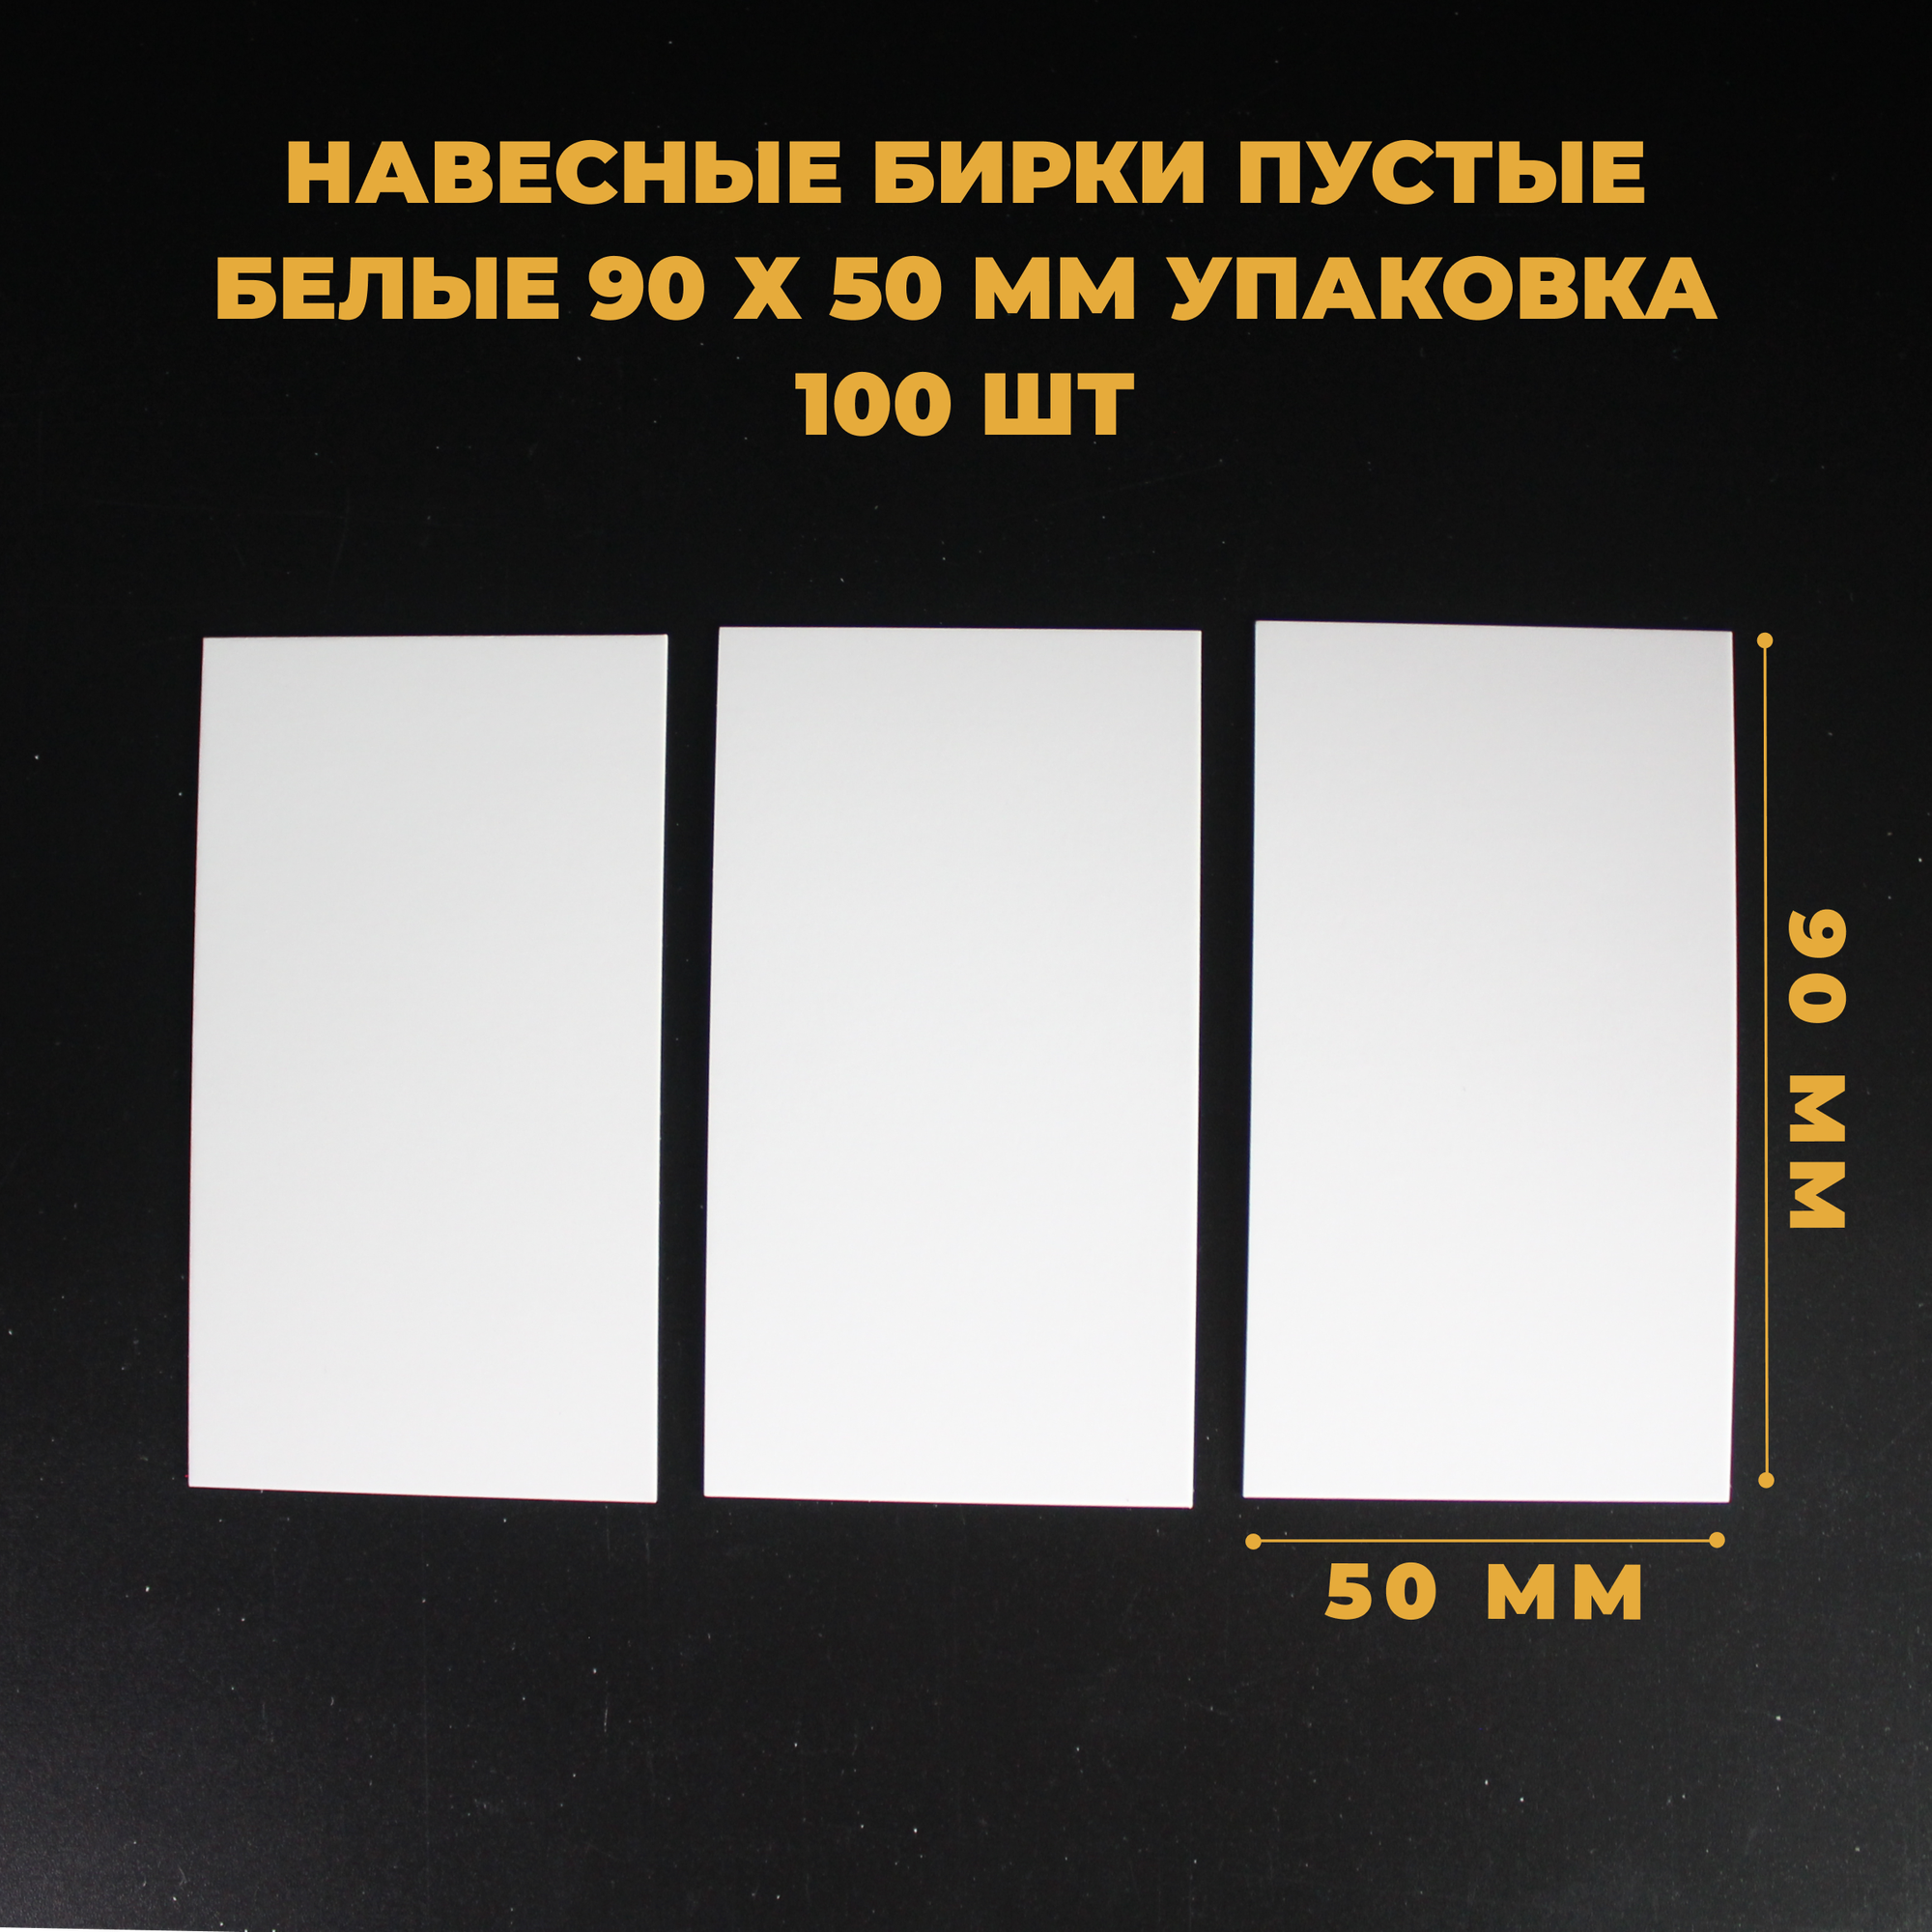 Навесные бирки пустые белые СтандартПАК 90 х 50 мм упаковка 100 штук